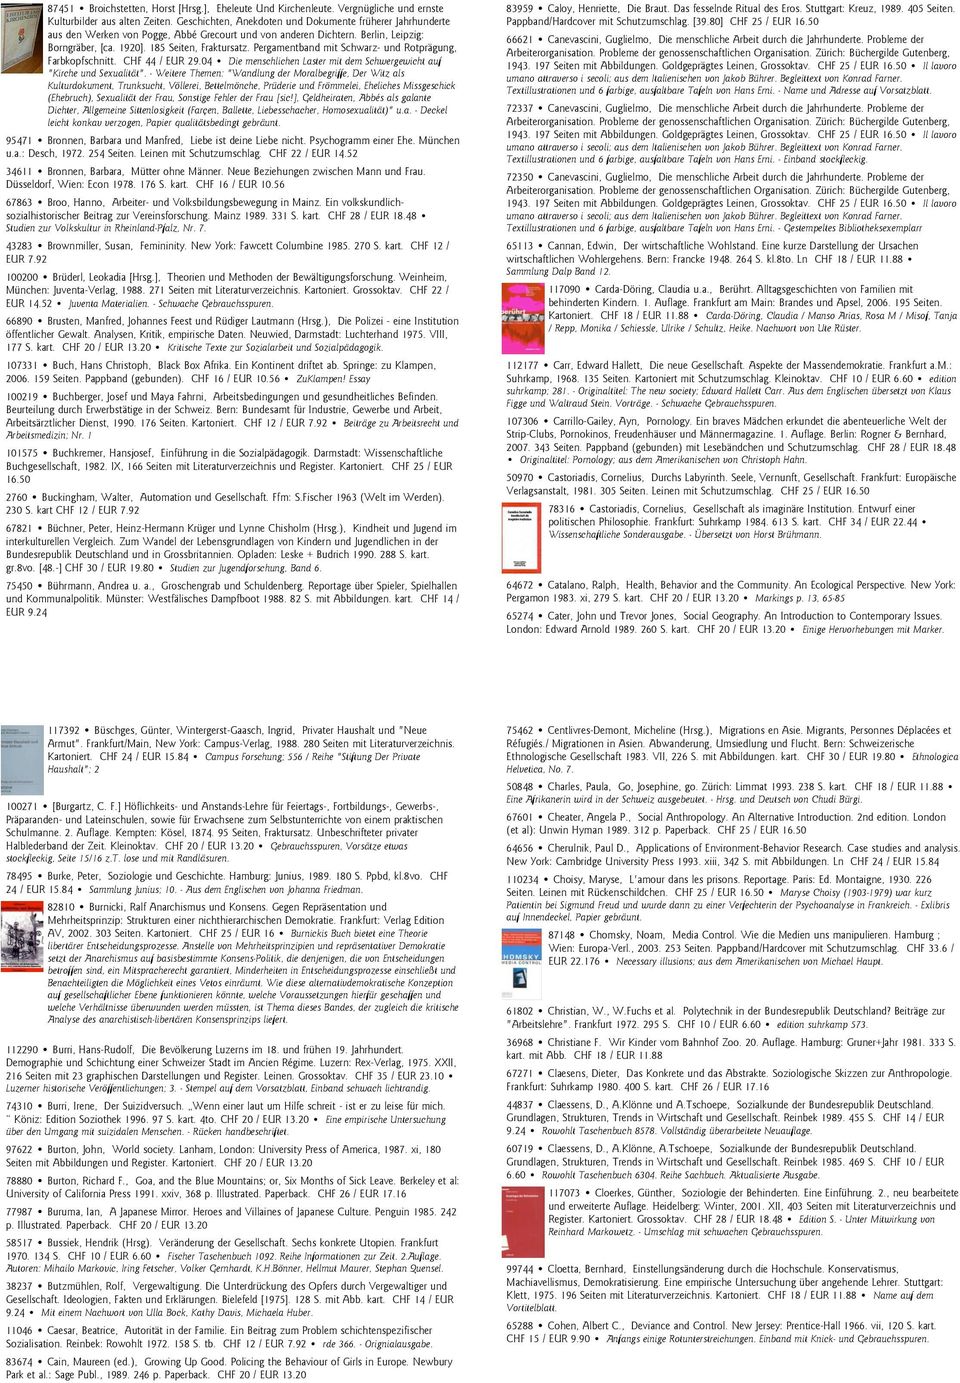 Pergamentband mit Schwarz- und Rotprägung, Farbkopfschnitt. CHF 44 / EUR 29.04 Die menschlichen Laster mit dem Schwergewicht auf "Kirche und Sexualität".